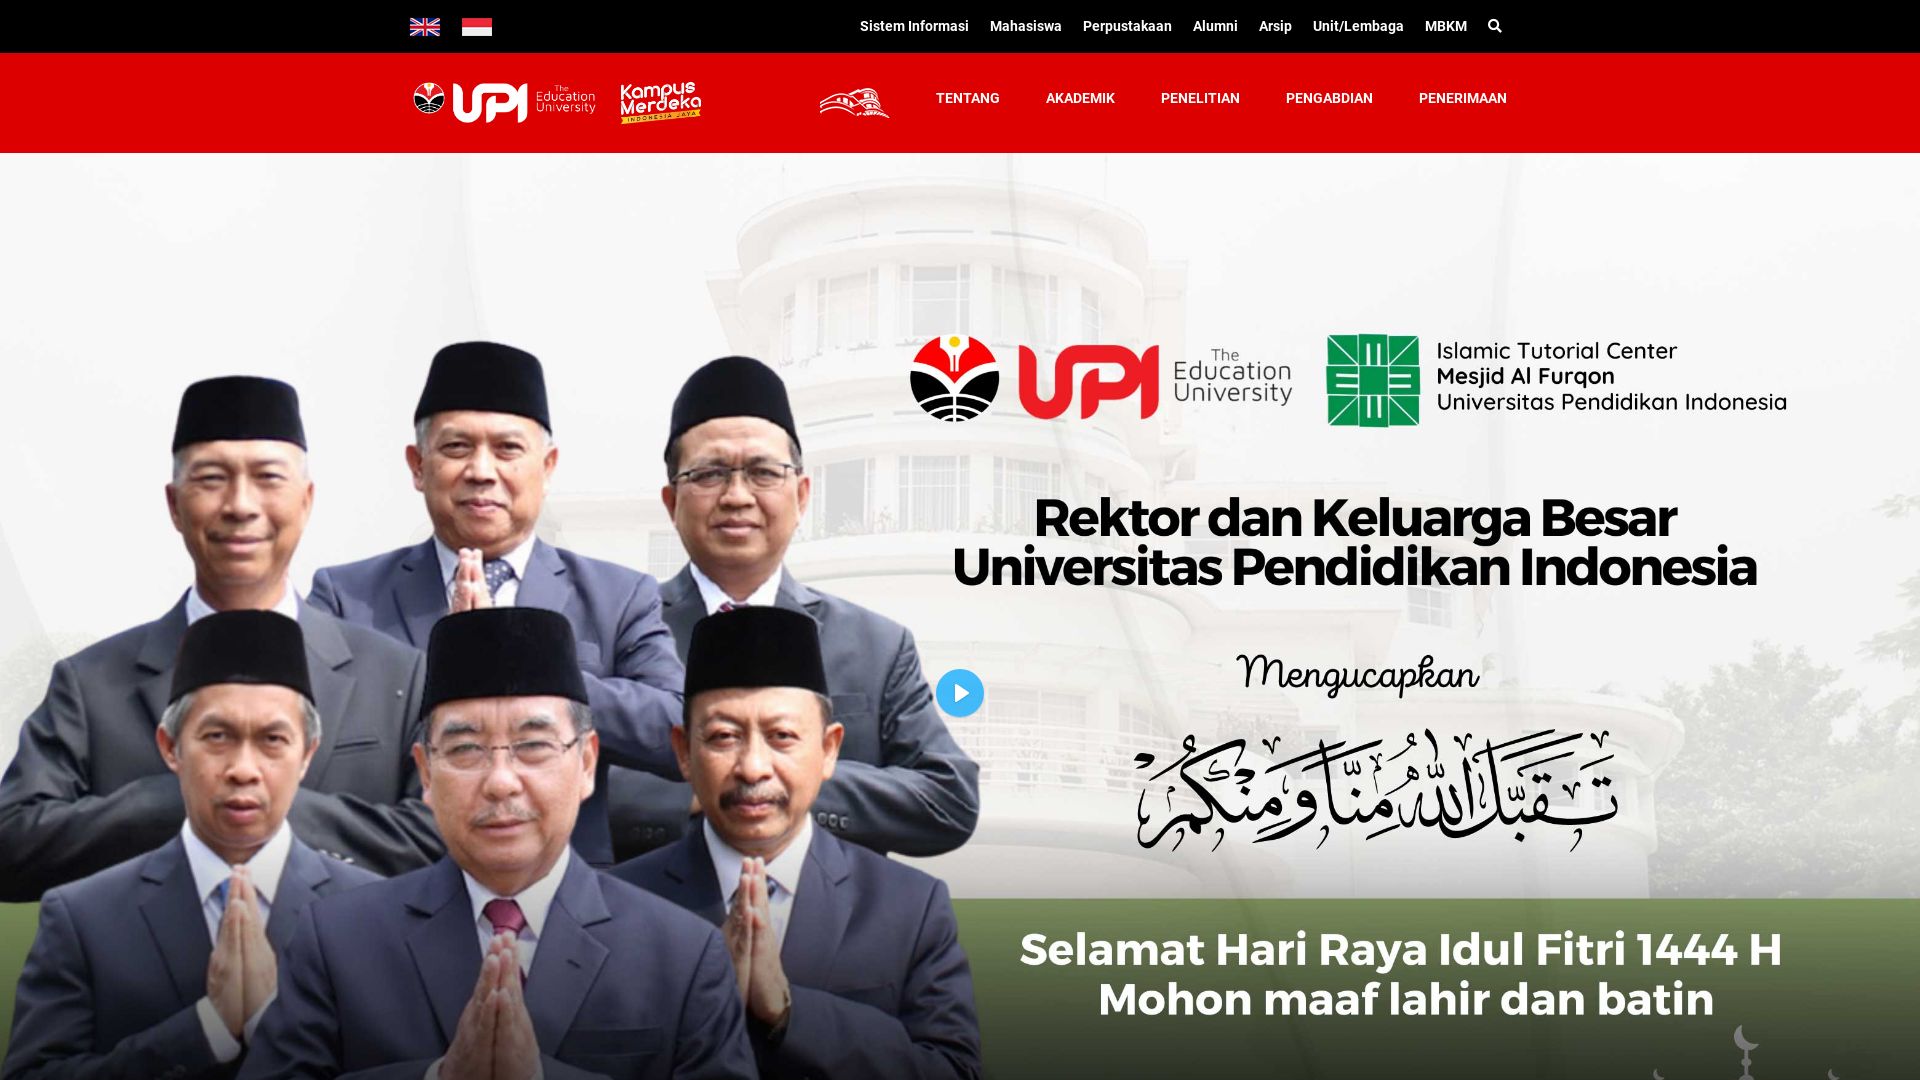 État du site web upi.edu est   EN LIGNE